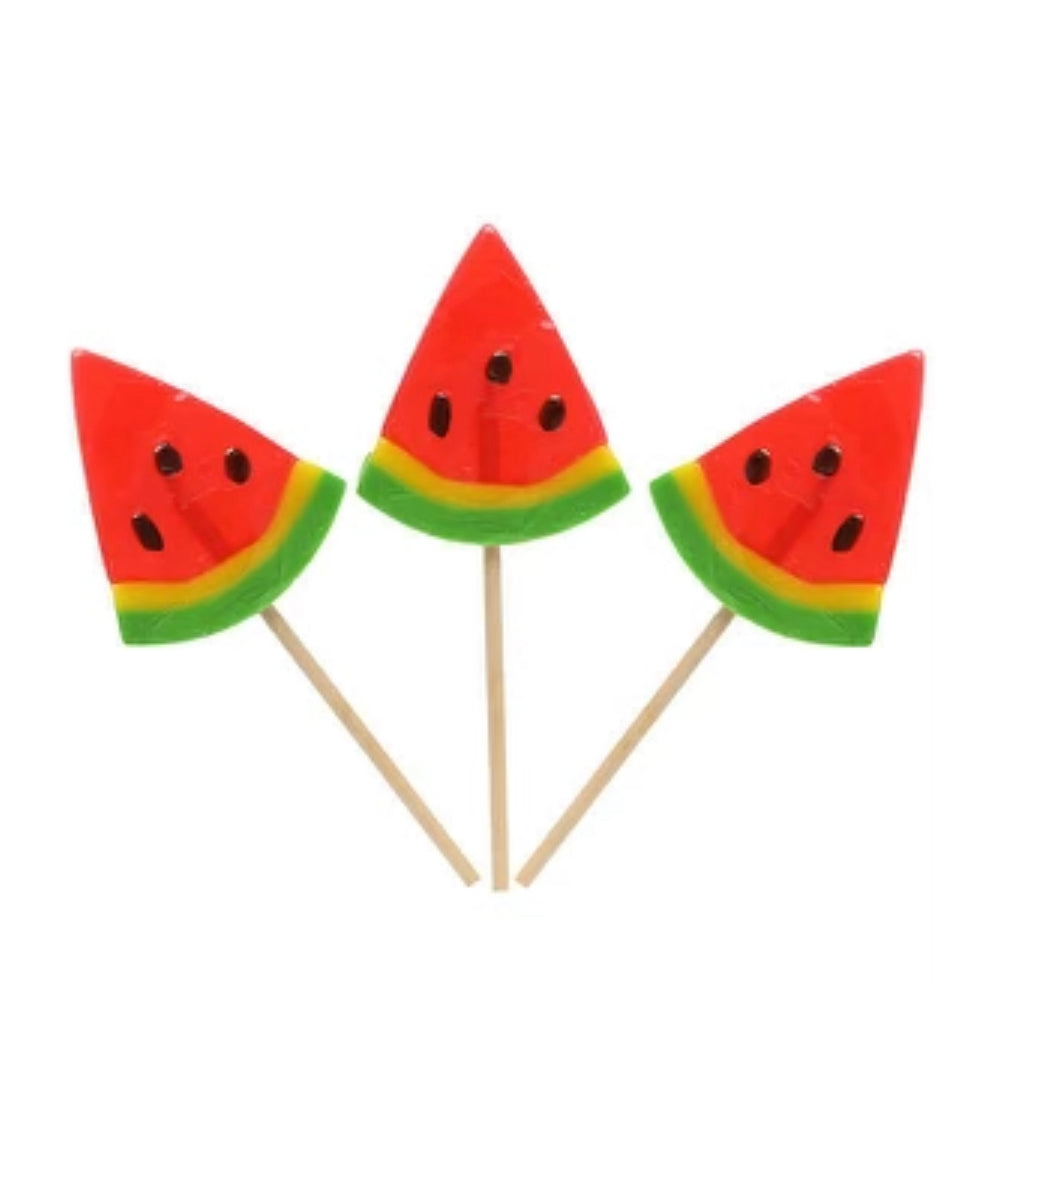 Watermelon Wedges Lollipop